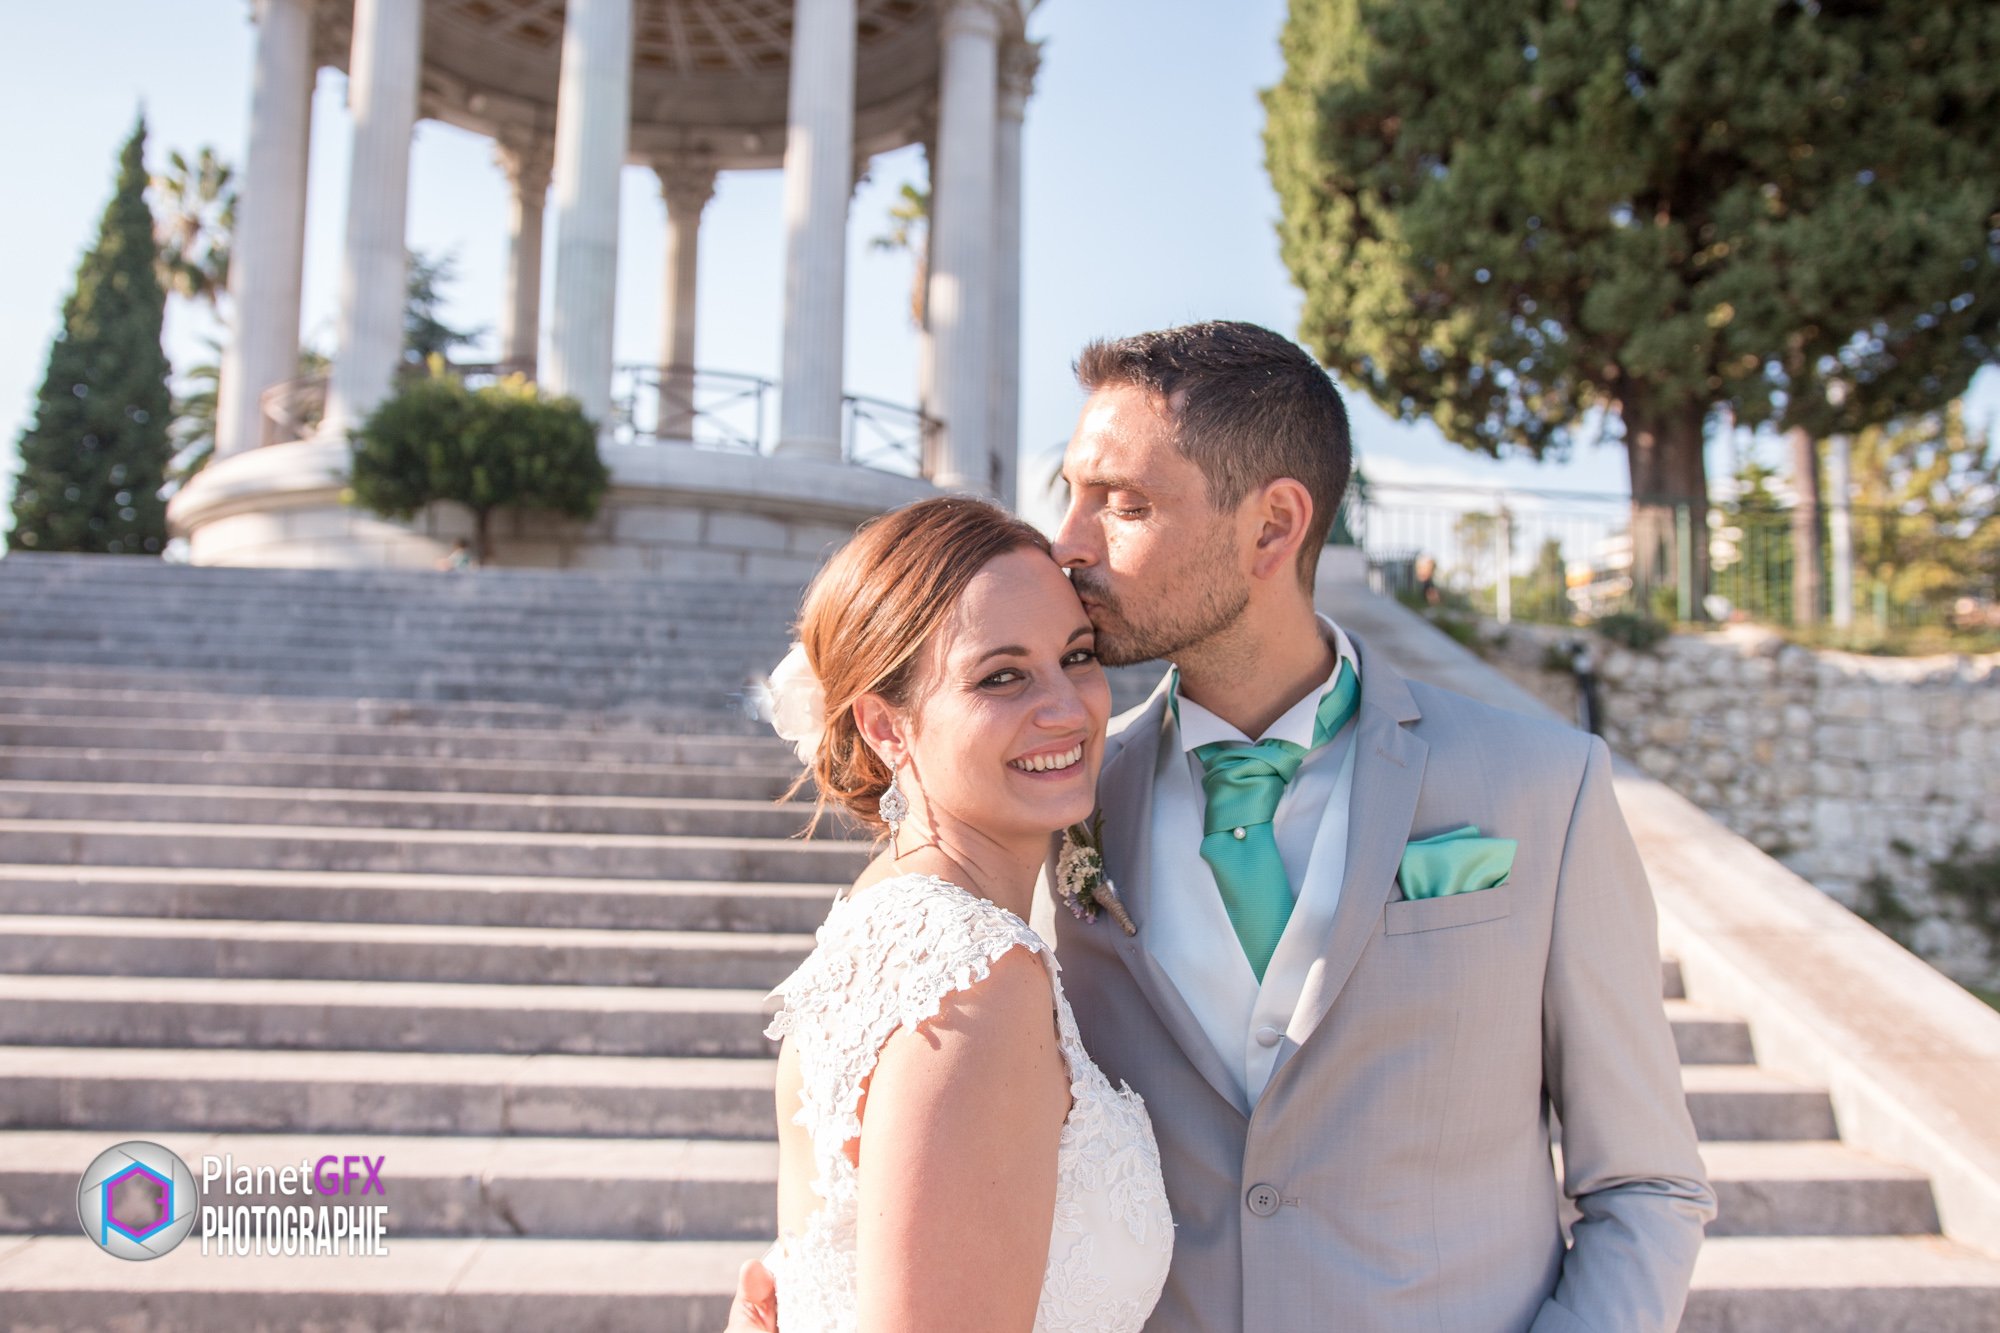 Stéphane & Audrey - Le mariage du 26 Sept. 2015, Nice, Côte d'Azur, Alpes Maritimes